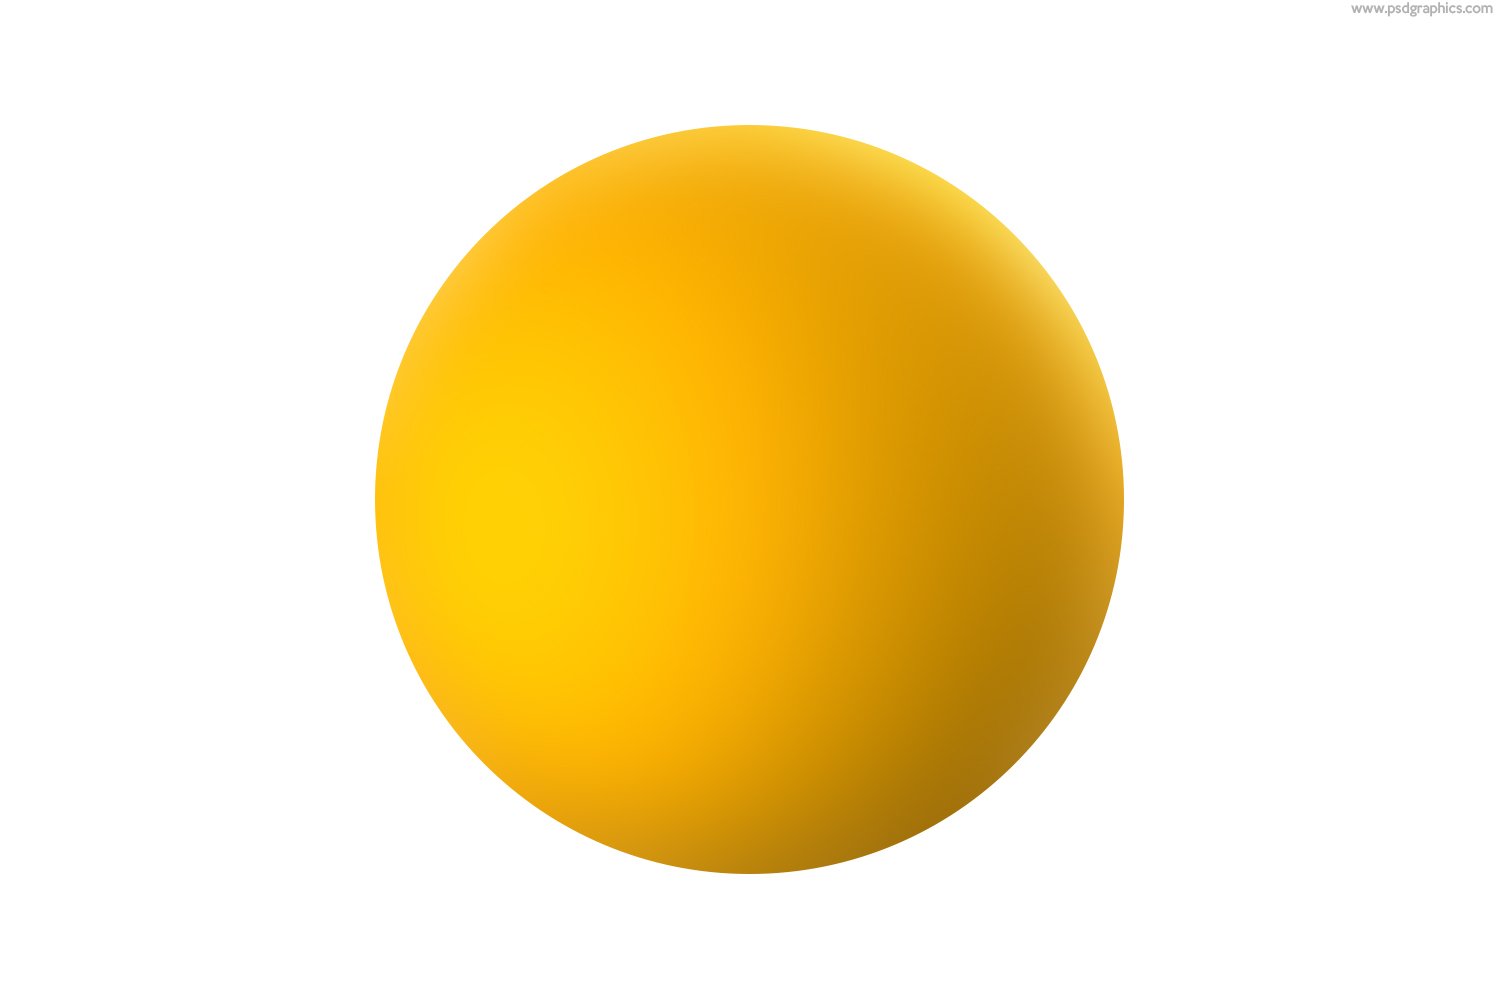 Круг желтый лист. Желтый круг. Круглый желтый фон. Желтый круг картинка. Желтое круглое.